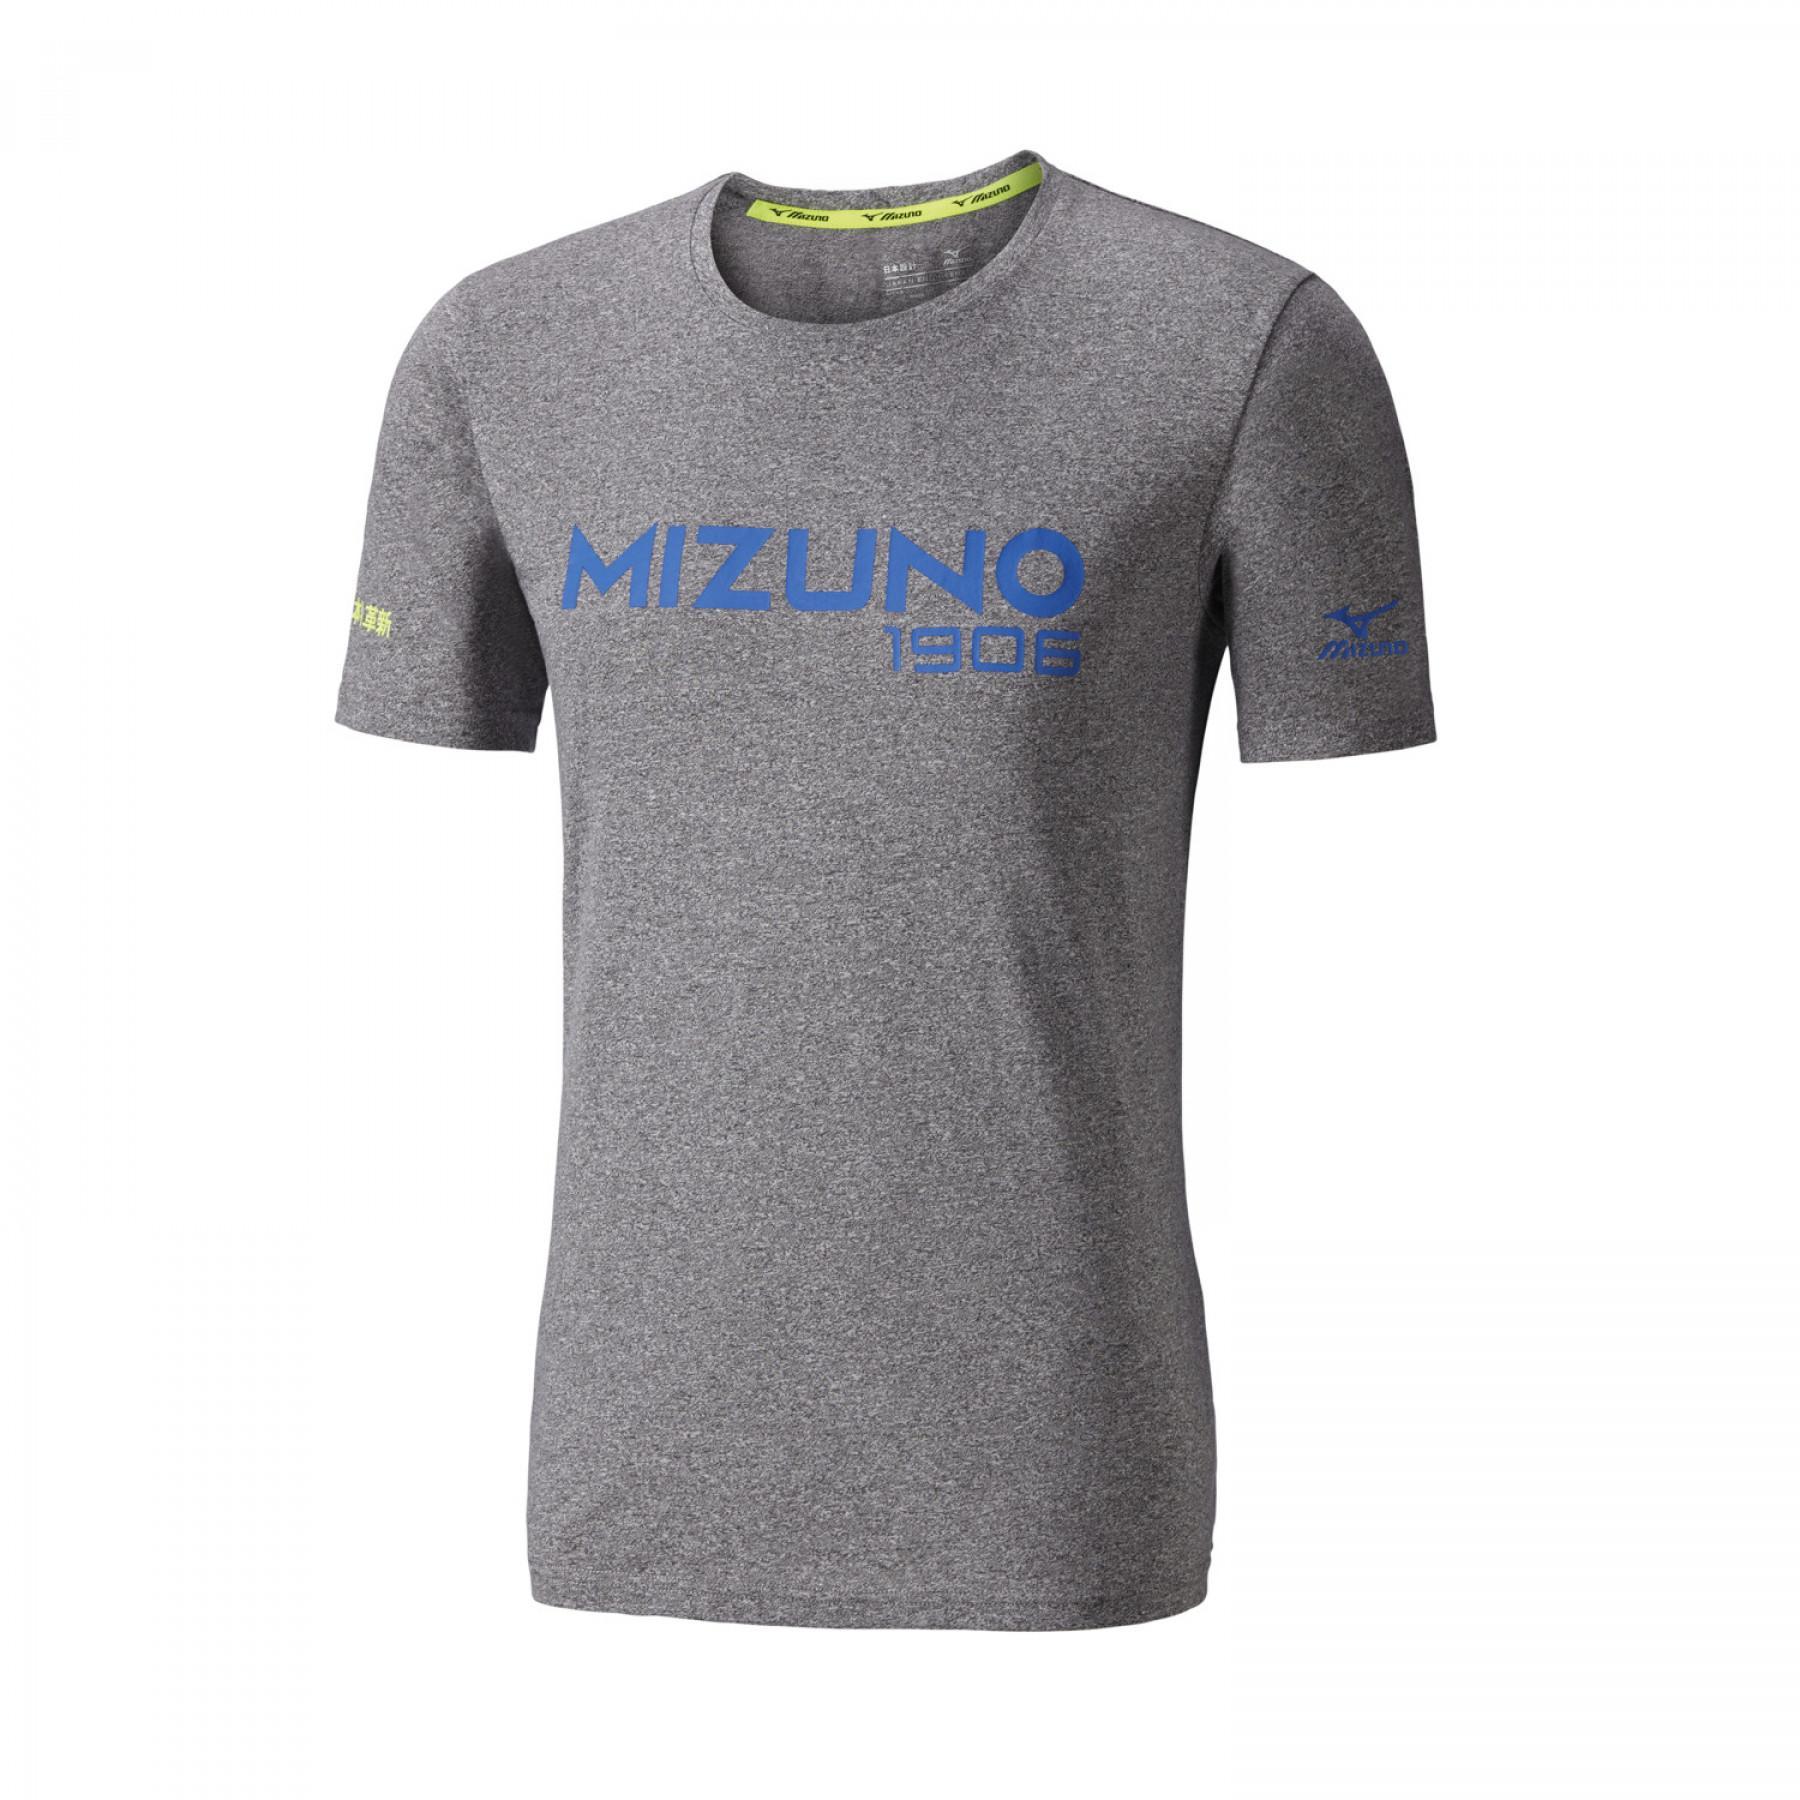 Camiseta Mizuno heritage